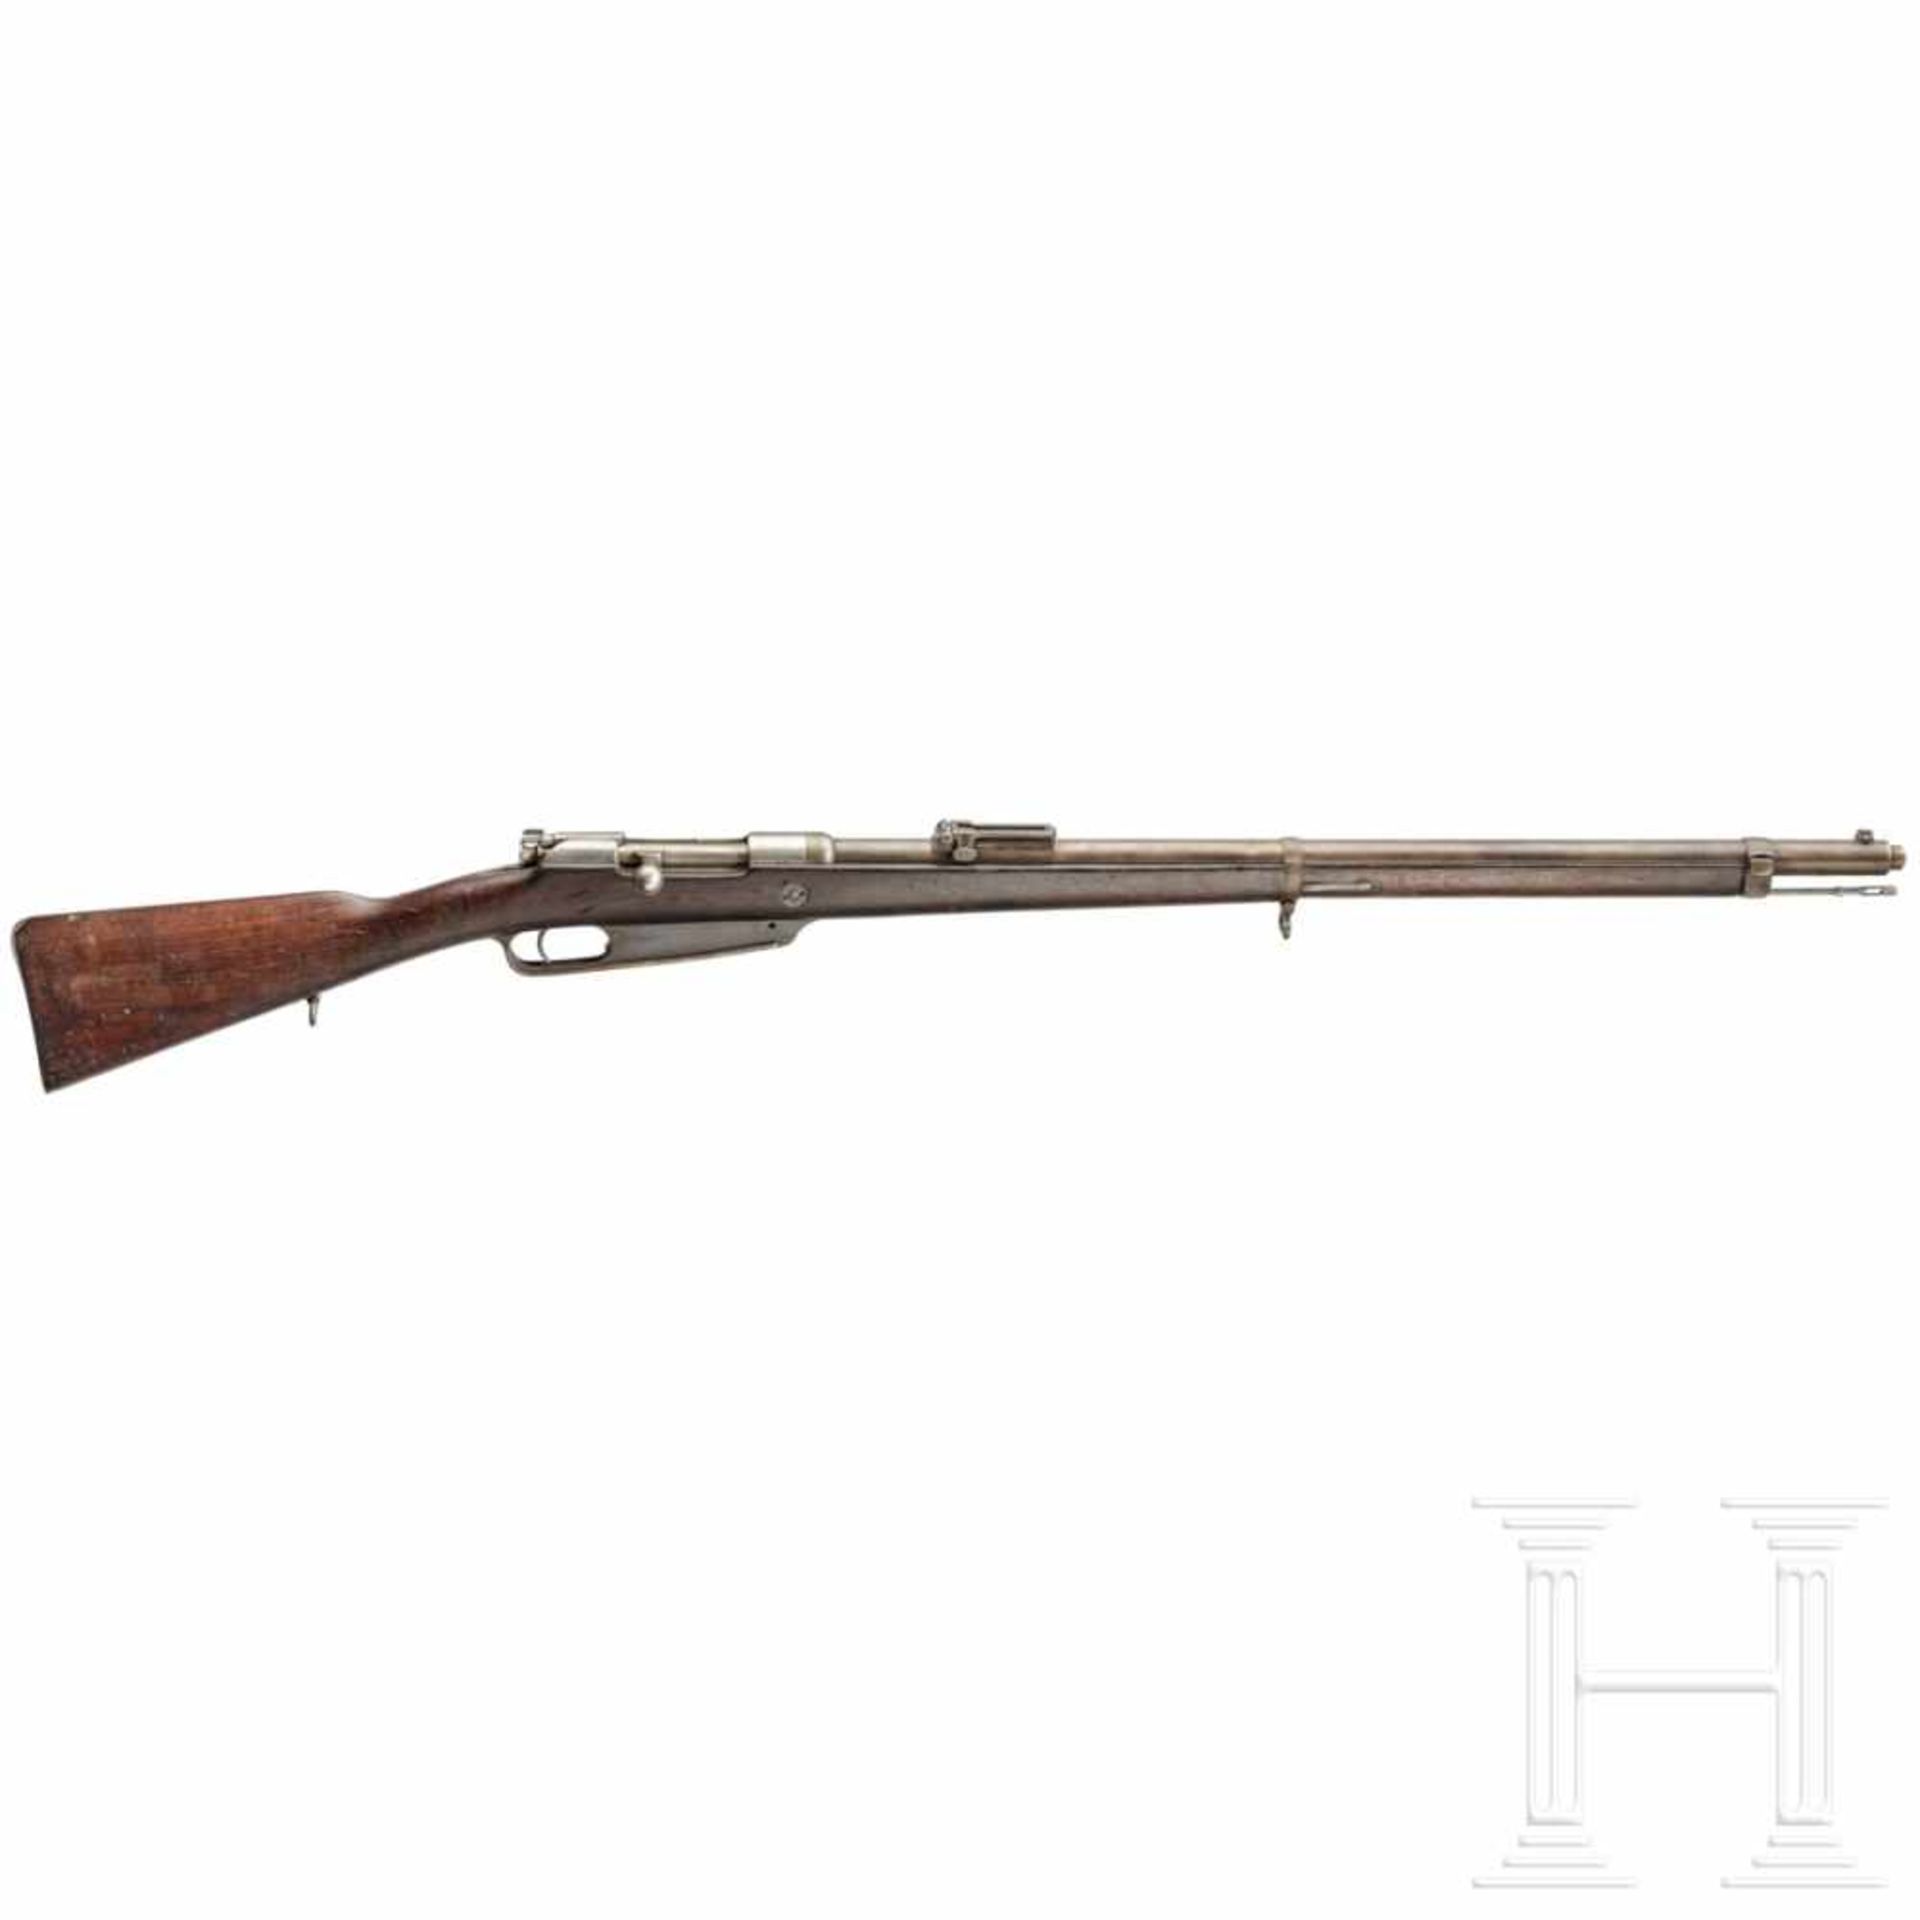 Gewehr 88, Steyr 1890Kal. 8x57 IS, Nr. F9858, Nicht nummerngleich. Fast blanker Lauf. Visierblatt in